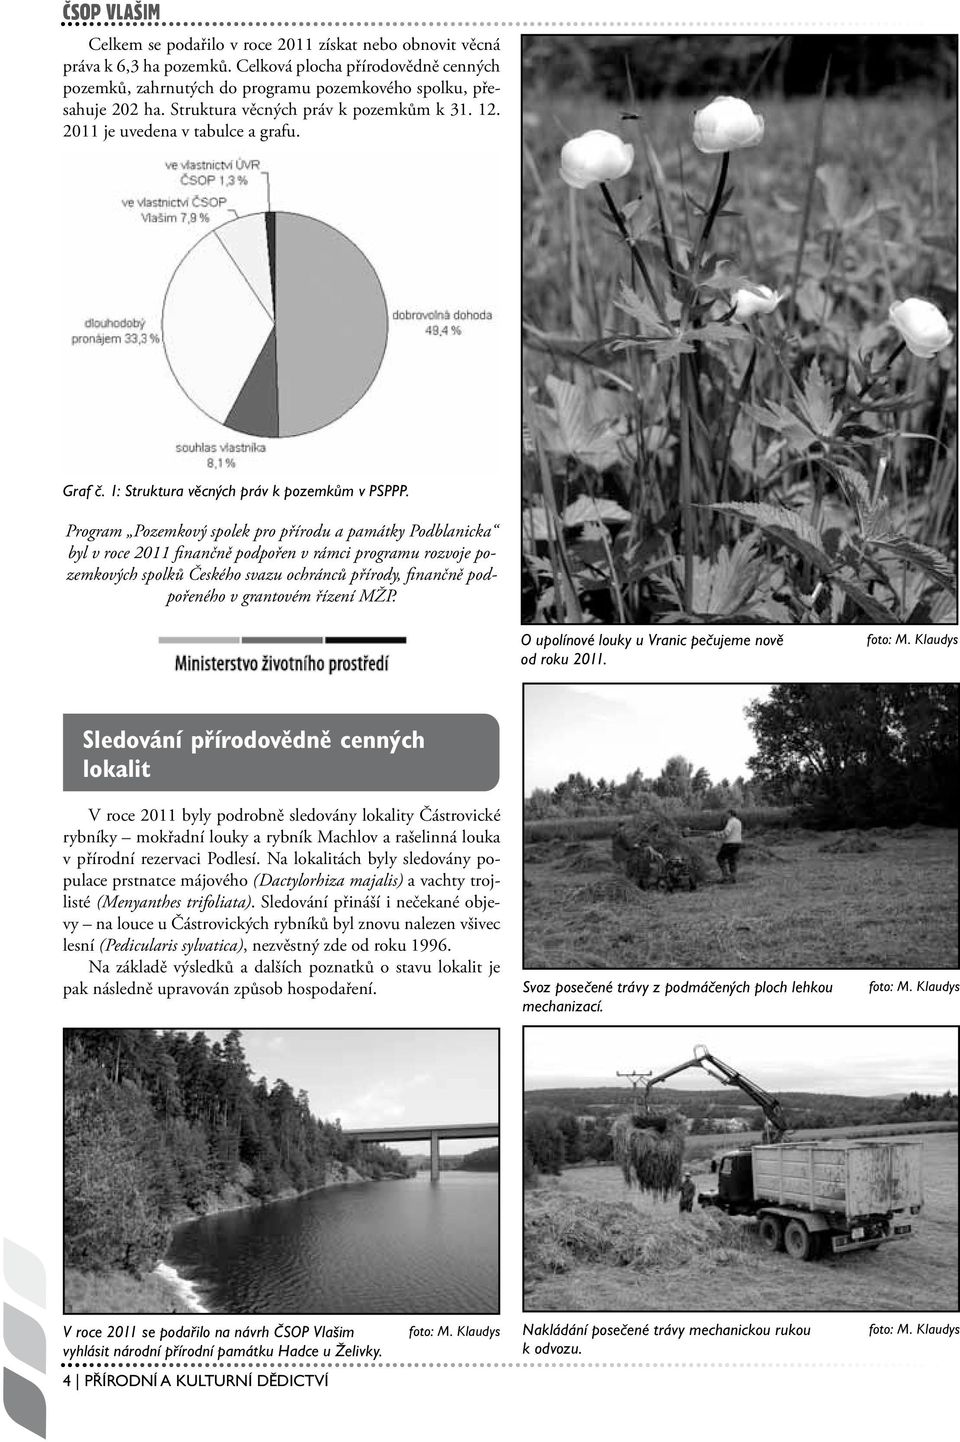 Program Pozemkový spolek pro přírodu a památky Podblanicka byl v roce 2011 finančně podpořen v rámci programu rozvoje pozemkových spolků Českého svazu ochránců přírody, finančně podpořeného v